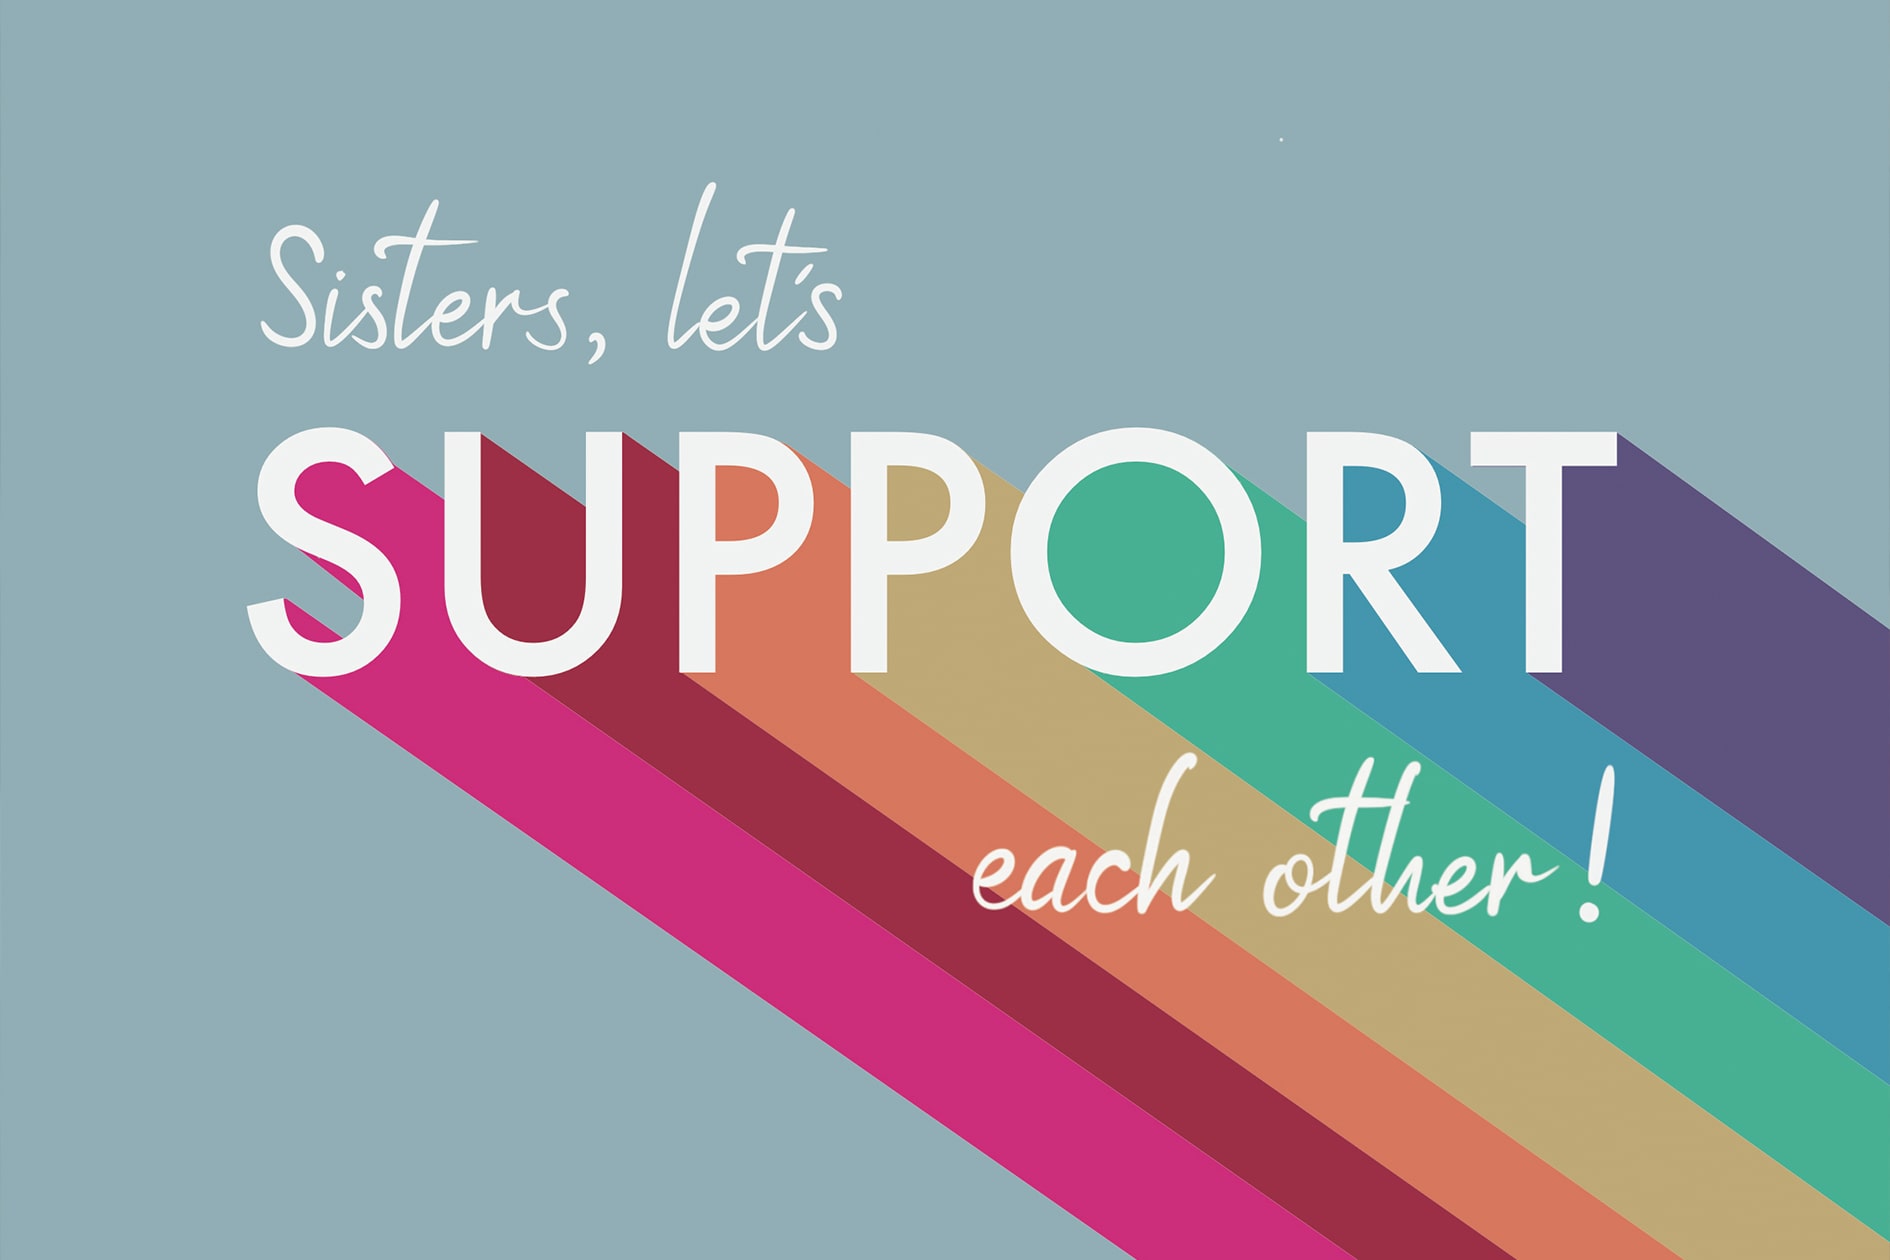 Symbolisches Bild mit den Worten "Sisters, let's support each other" und farbenfrohen Streifen, auf einem blauen Hintergrund.